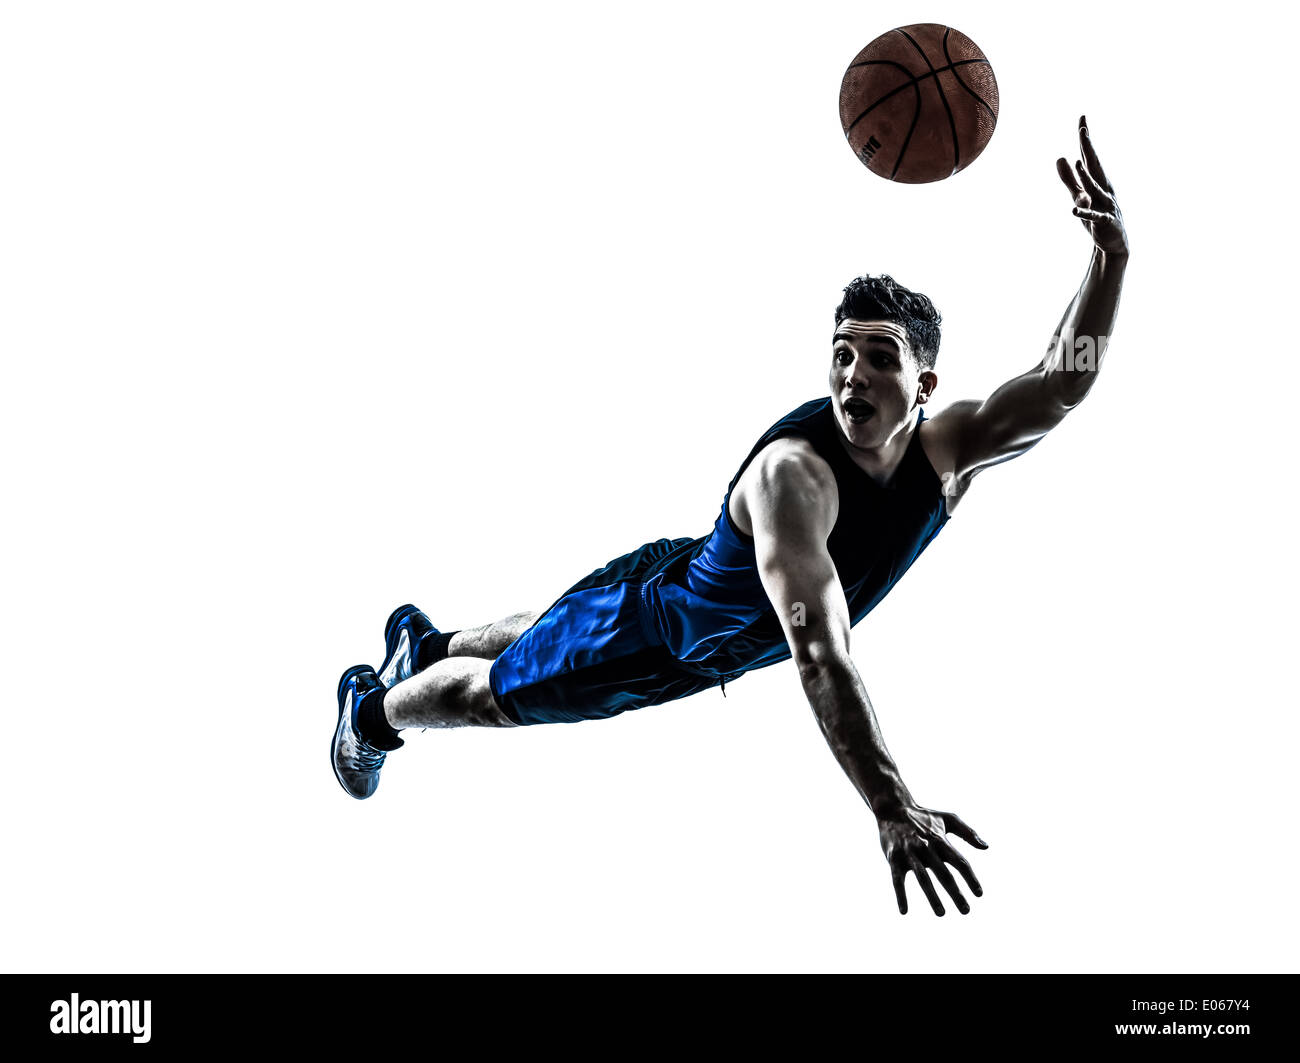 Joueur de basket-ball d'un homme sautant de jeter en silhouette isolé sur fond blanc Banque D'Images